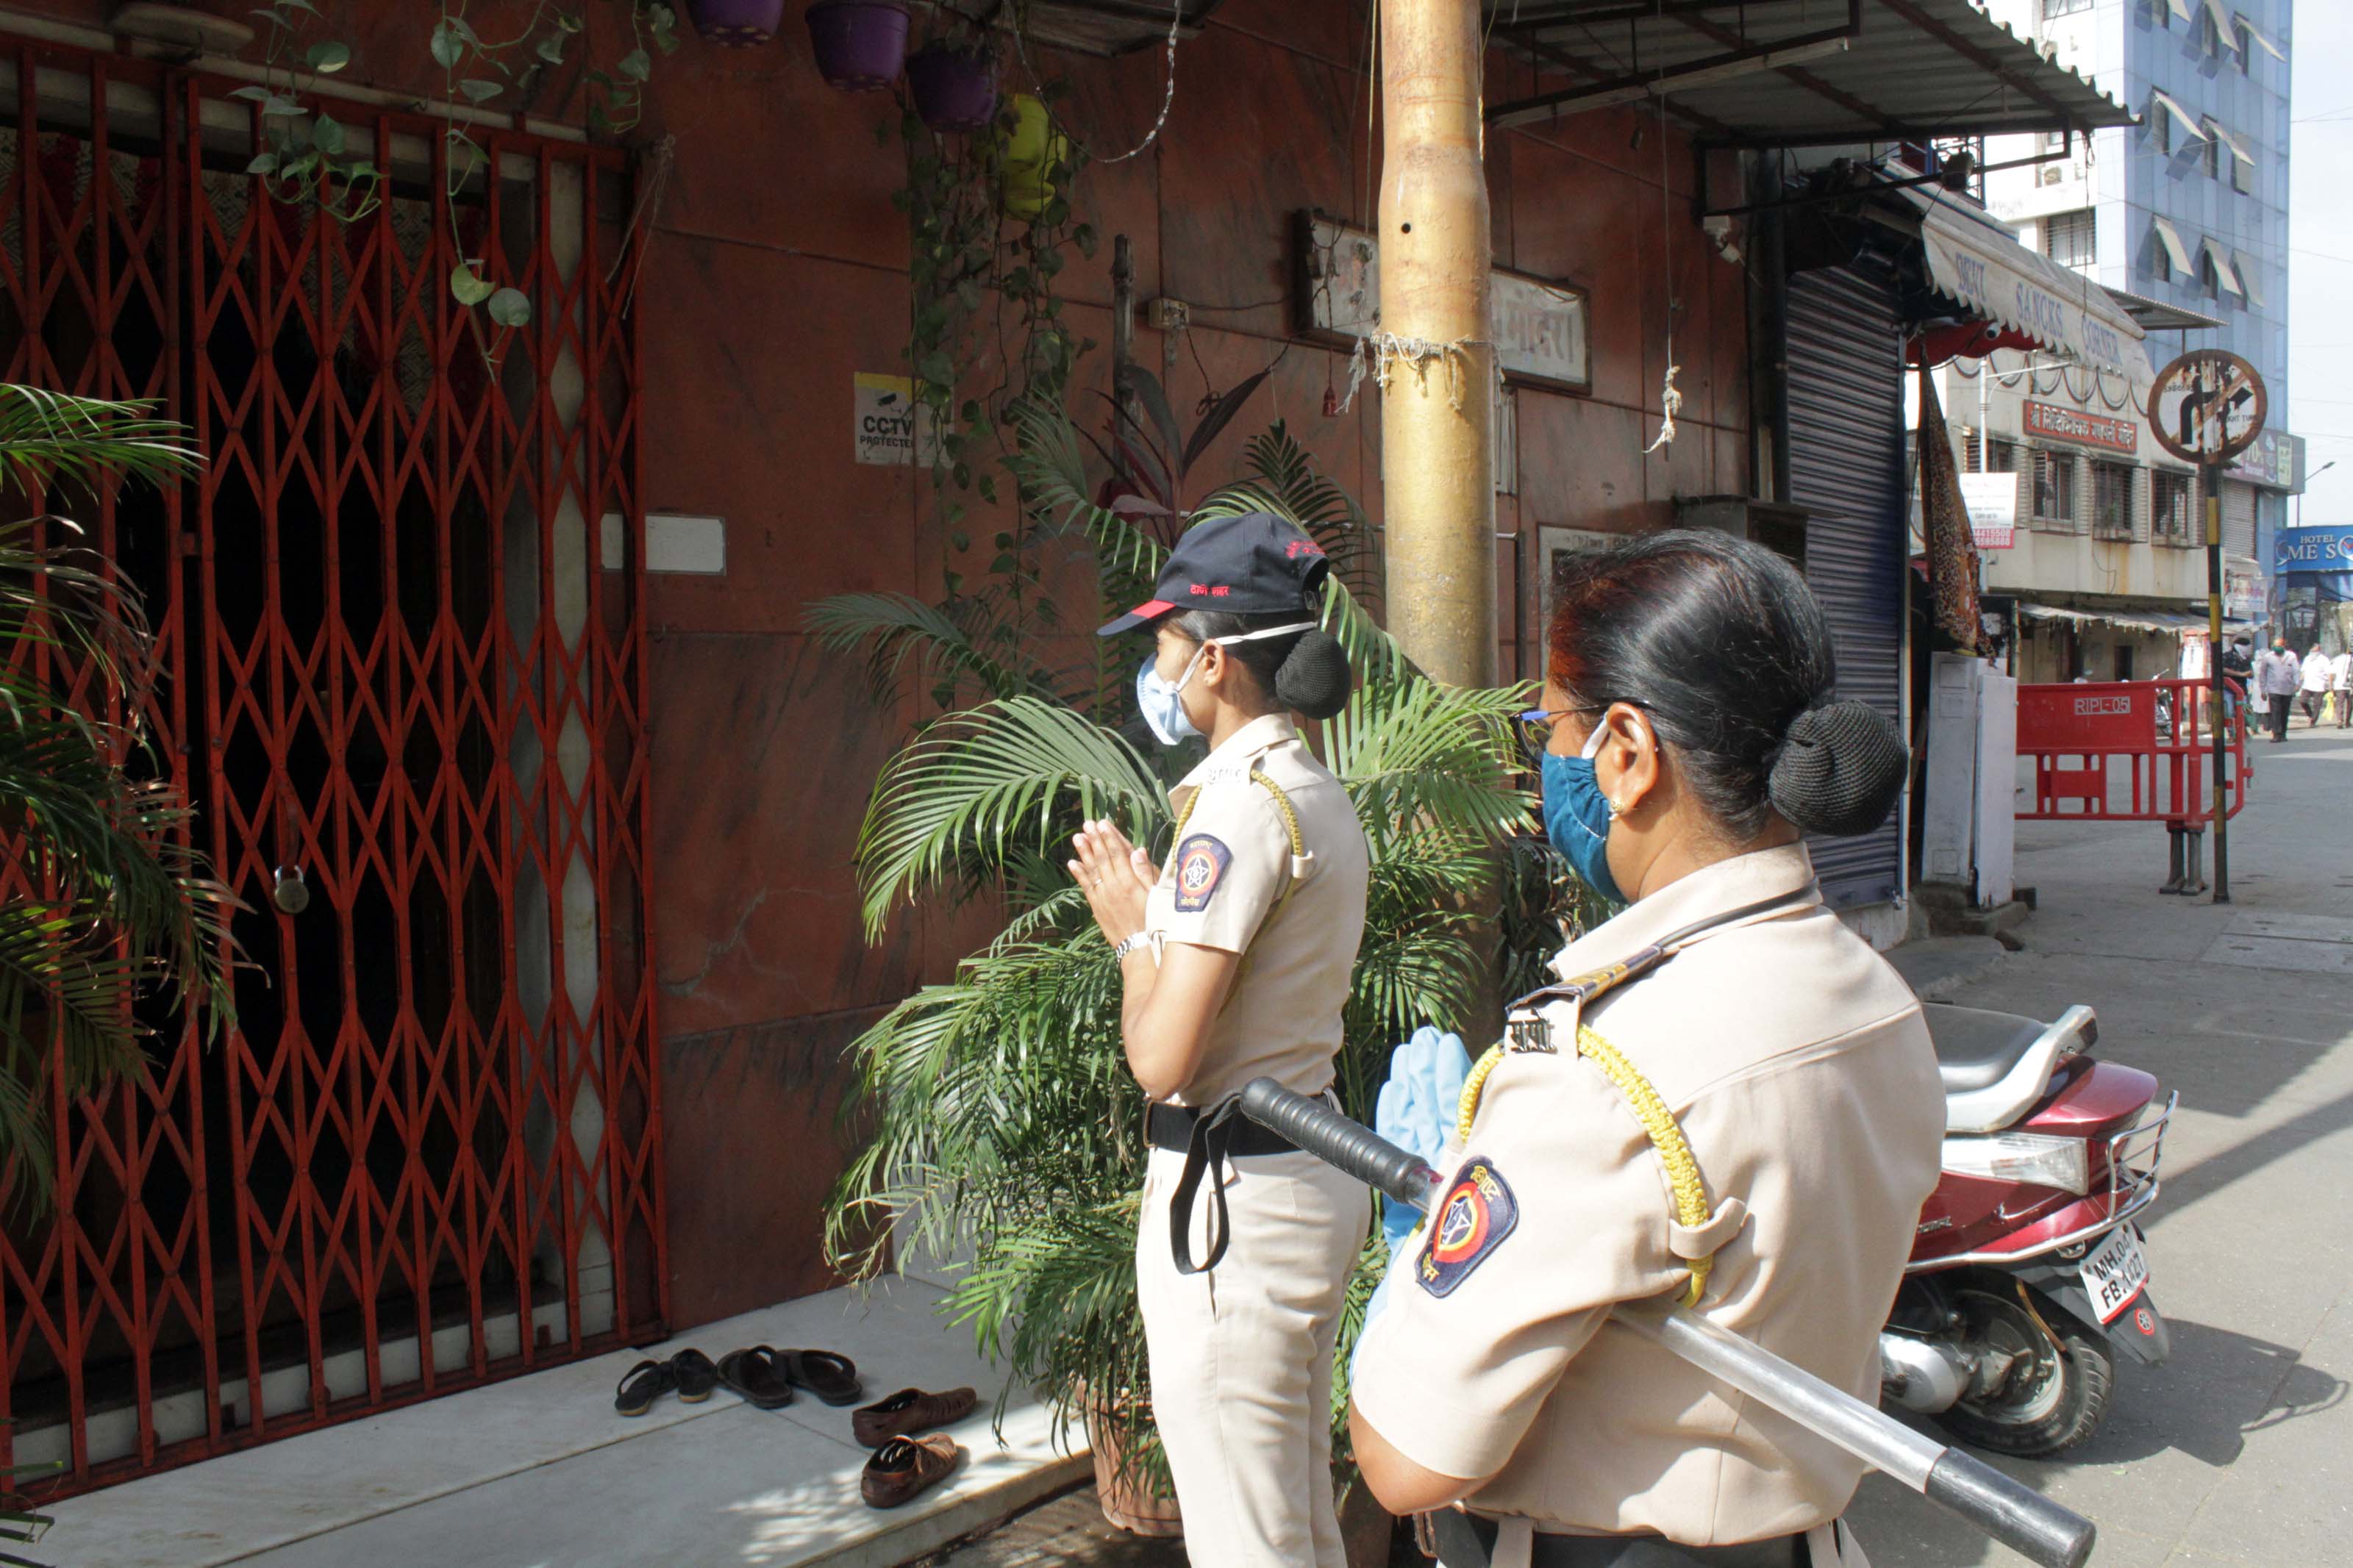 भाविकांच्याबरोब कर्तव्यावर तैनात असणाऱ्या पोलीस कर्मचाऱ्यांनी देखील हनुमंताचे दर्शन घेतले